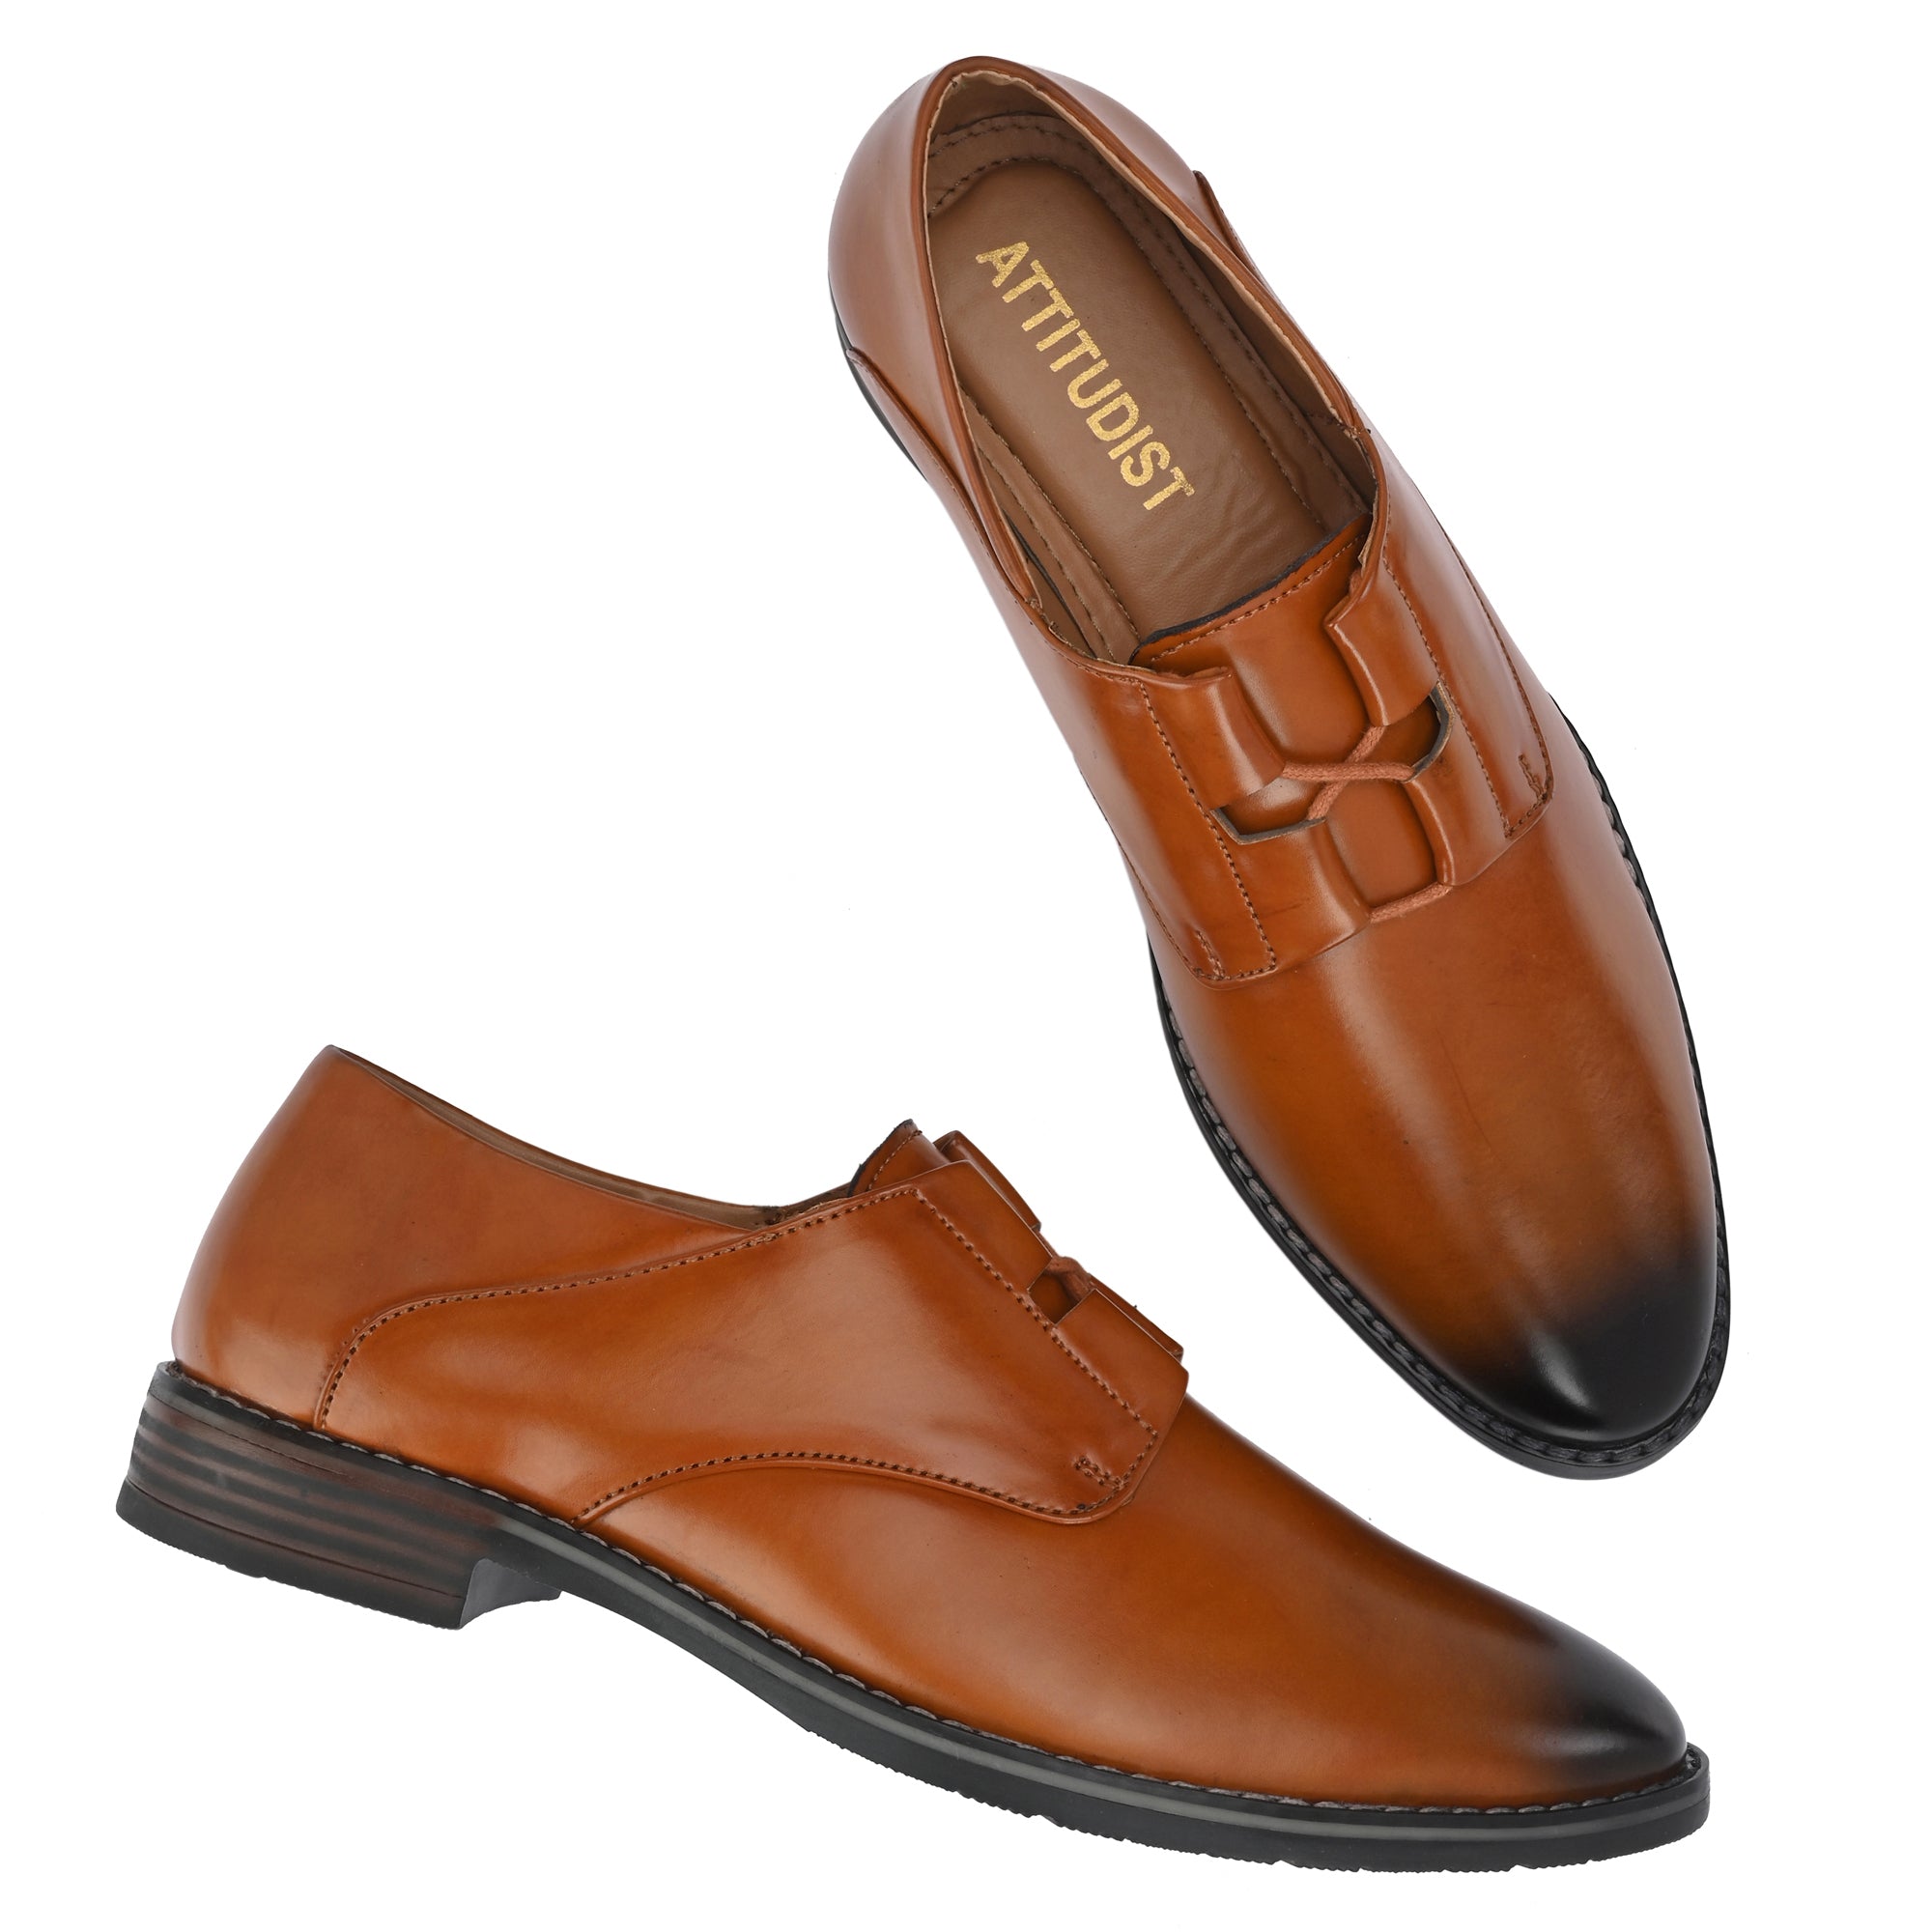 tan-formal-lace-up-attitudist-shoes-for-men-with-design-sp12c